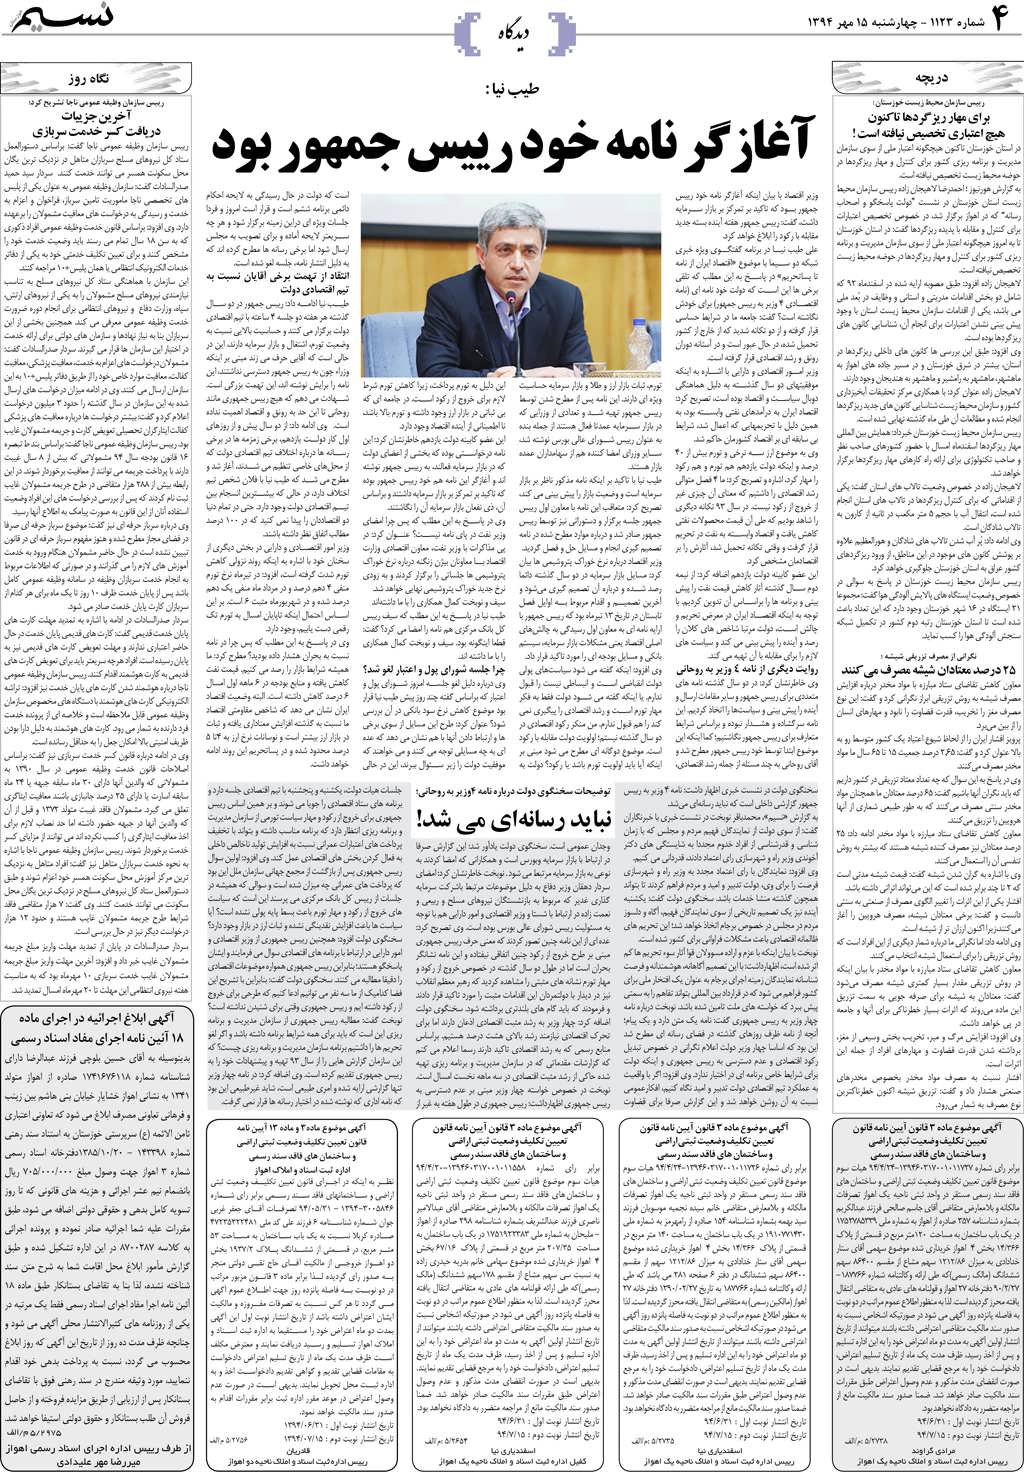 صفحه دیدگاه روزنامه نسیم شماره 1123